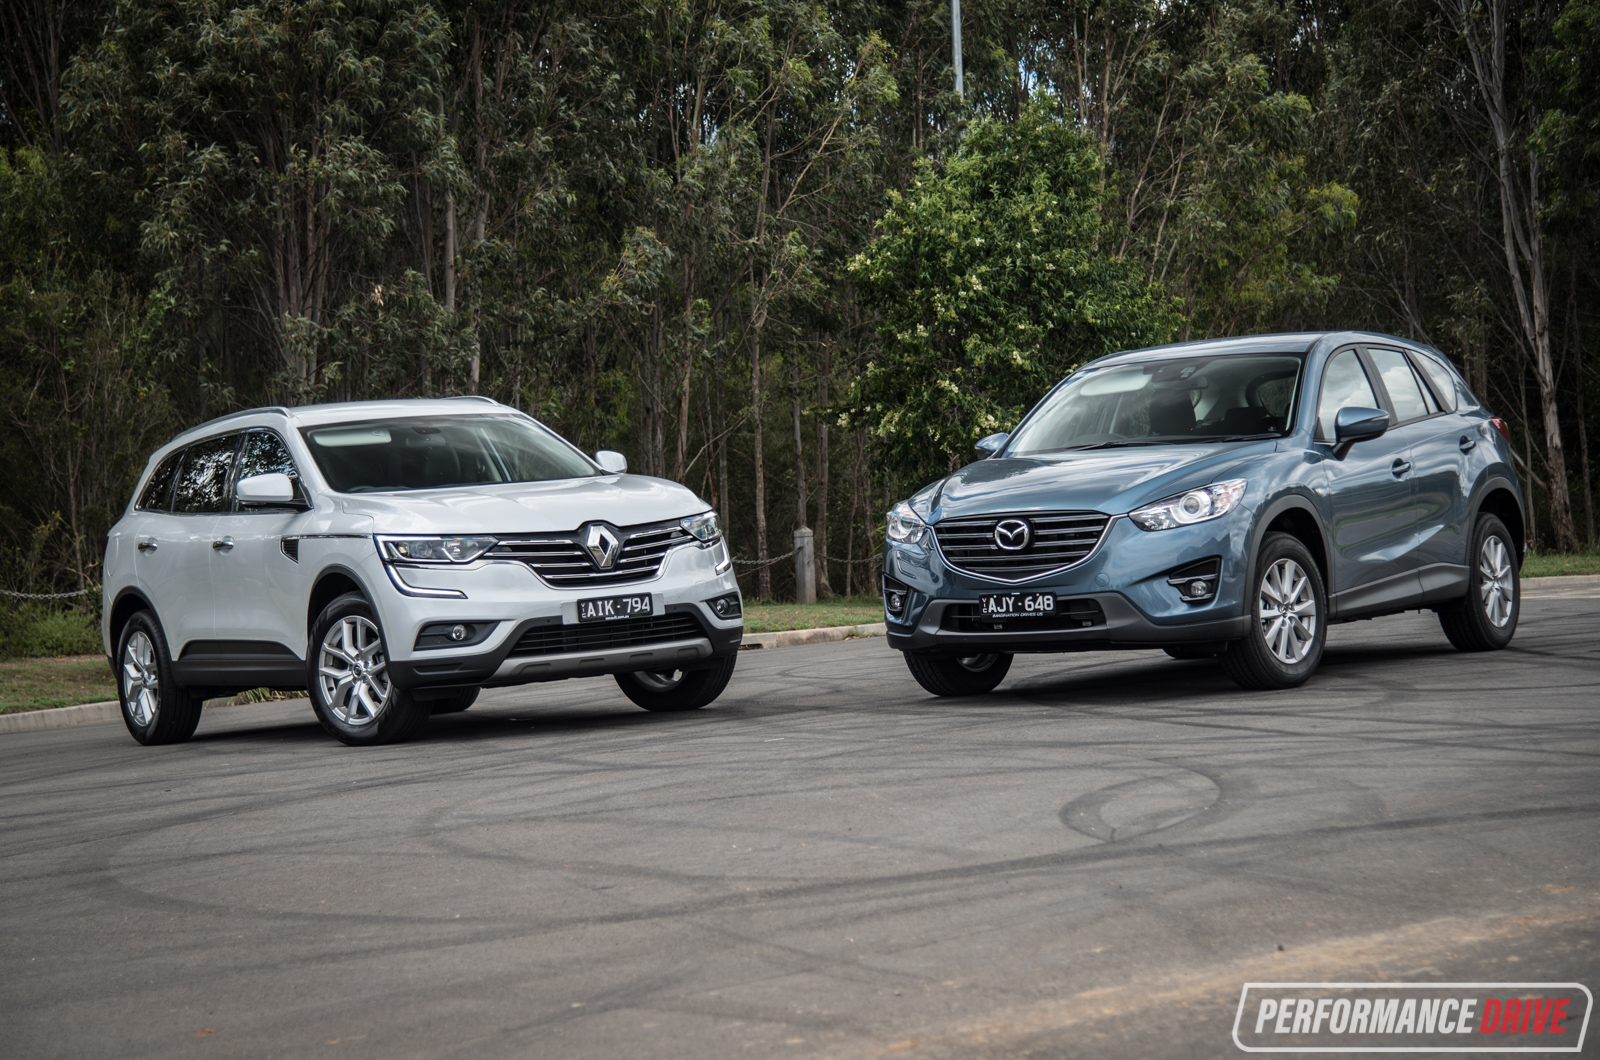 Renault Koleos vs Mazda CX-5: 2WD SUV comparison (video)